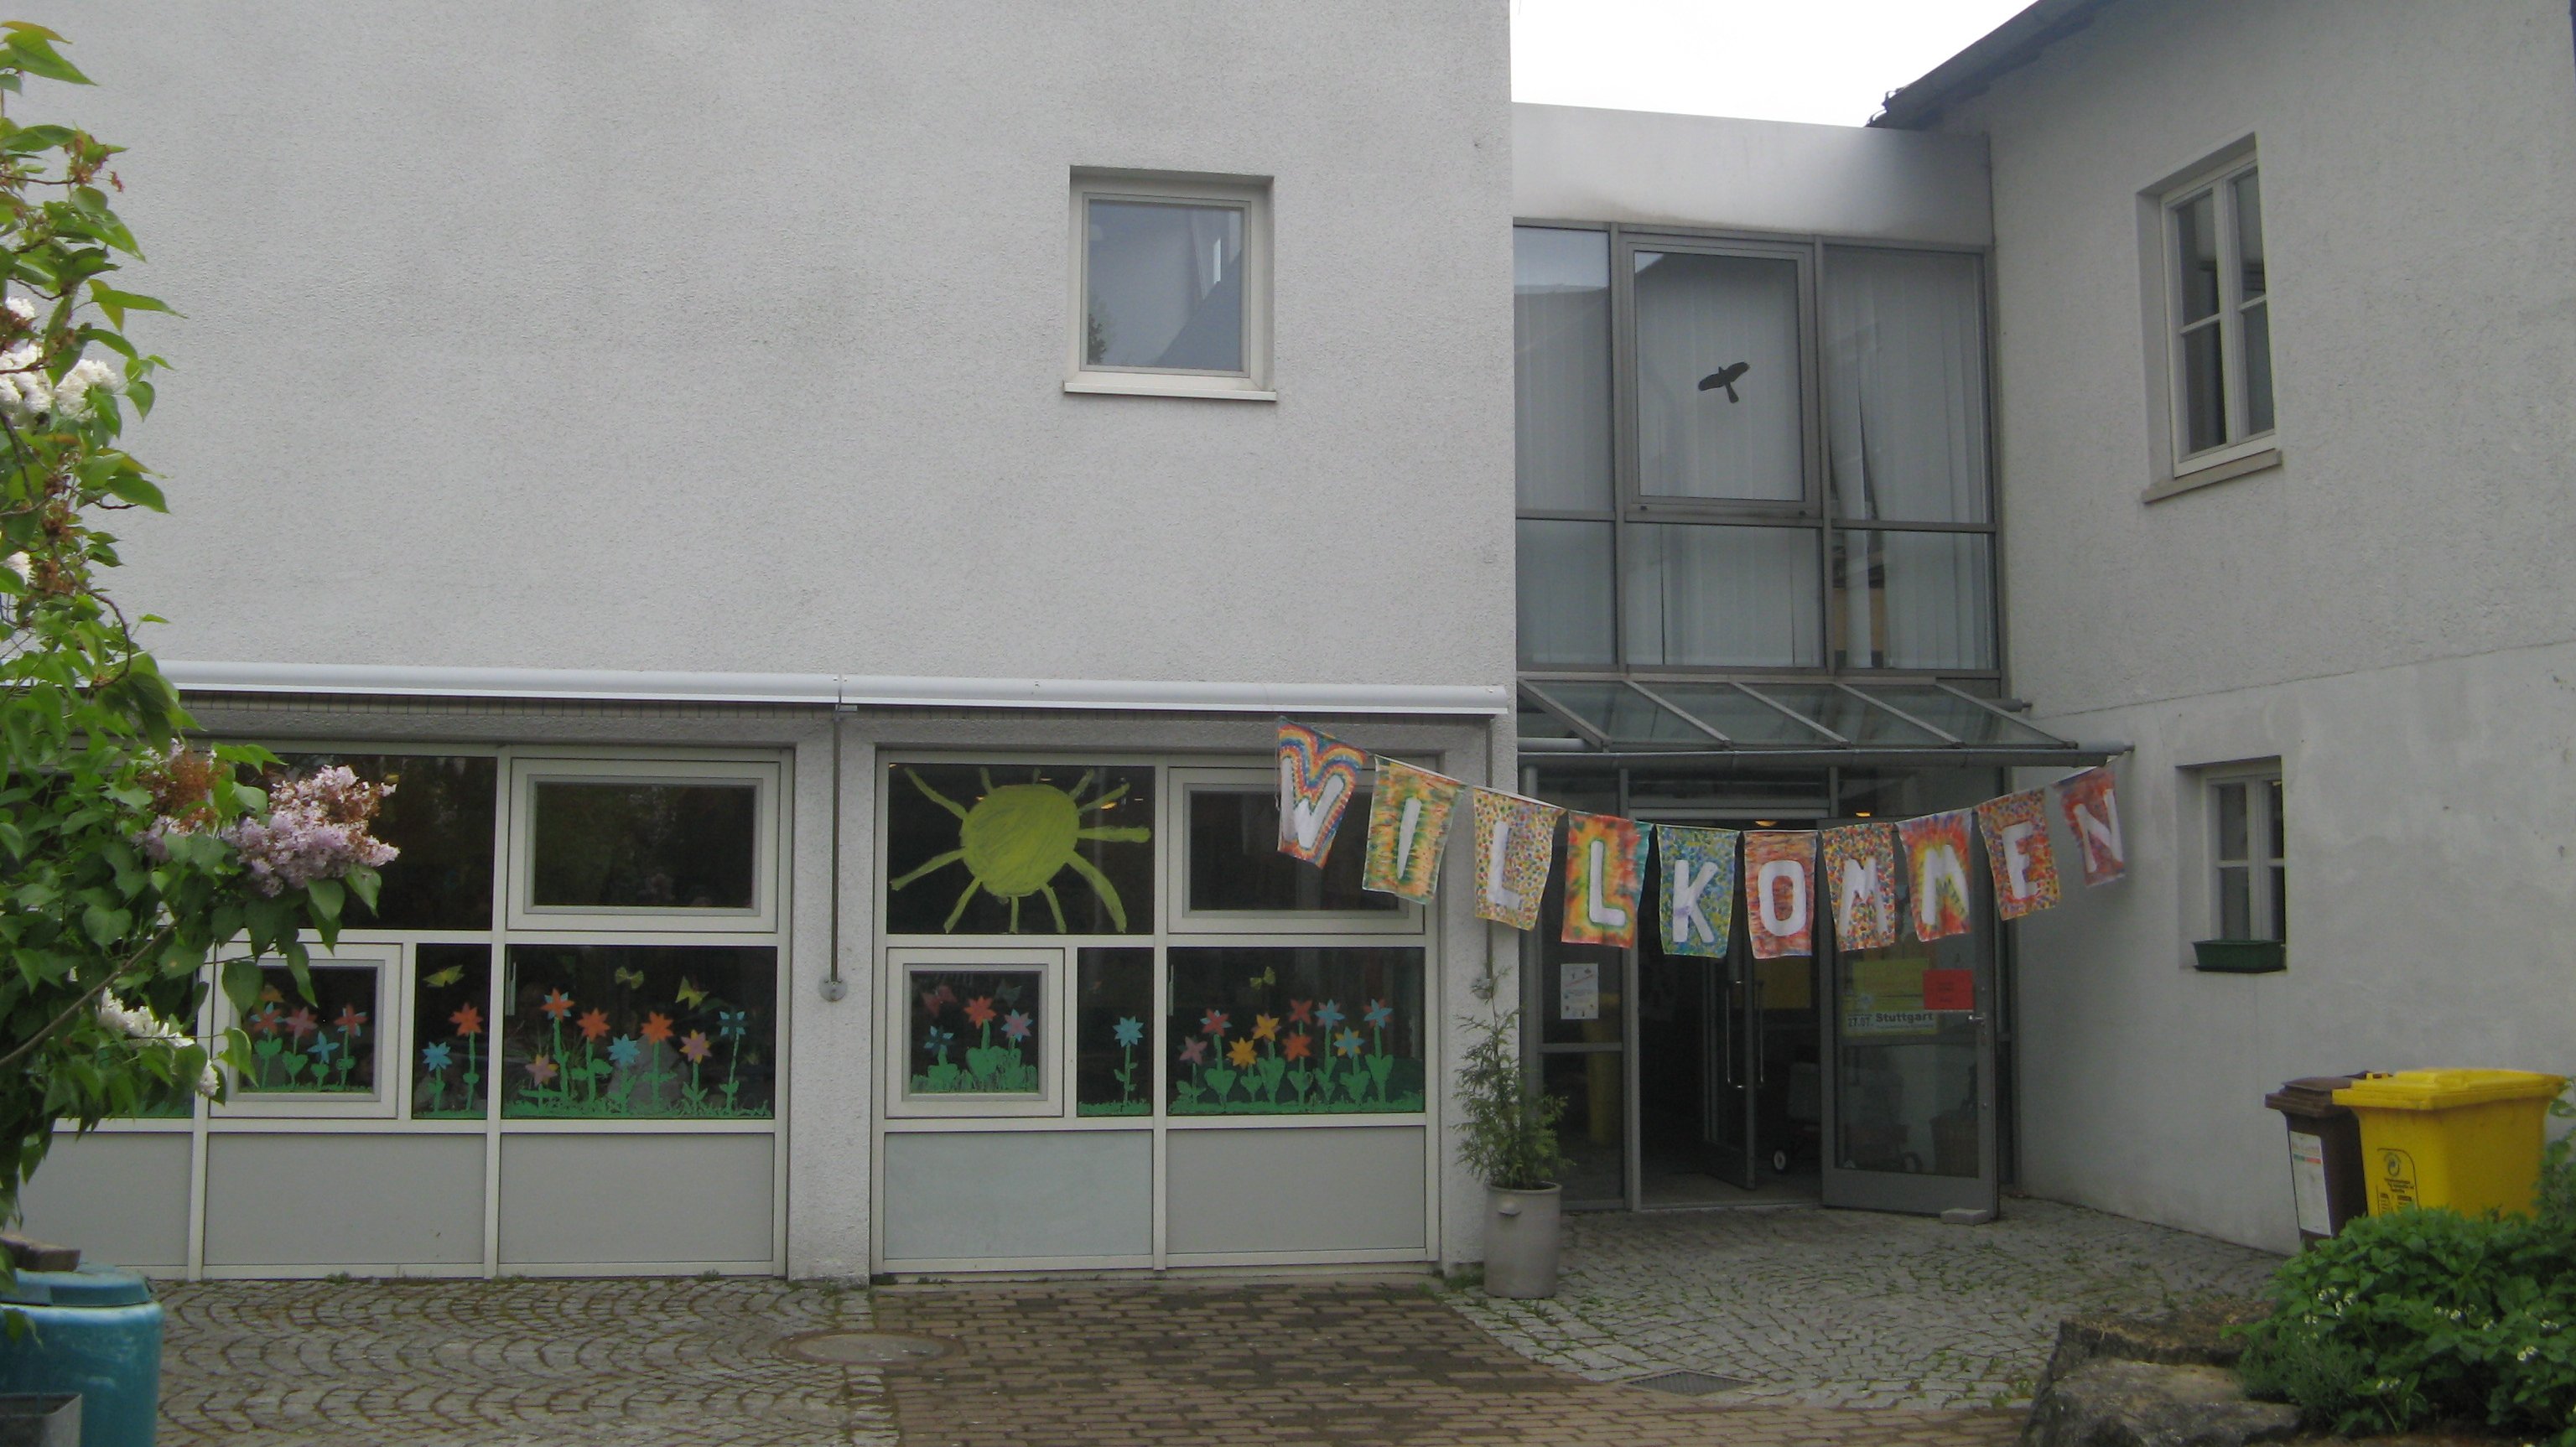 
    
            
                    Kindertagesstätte Weinstraße
                
        
